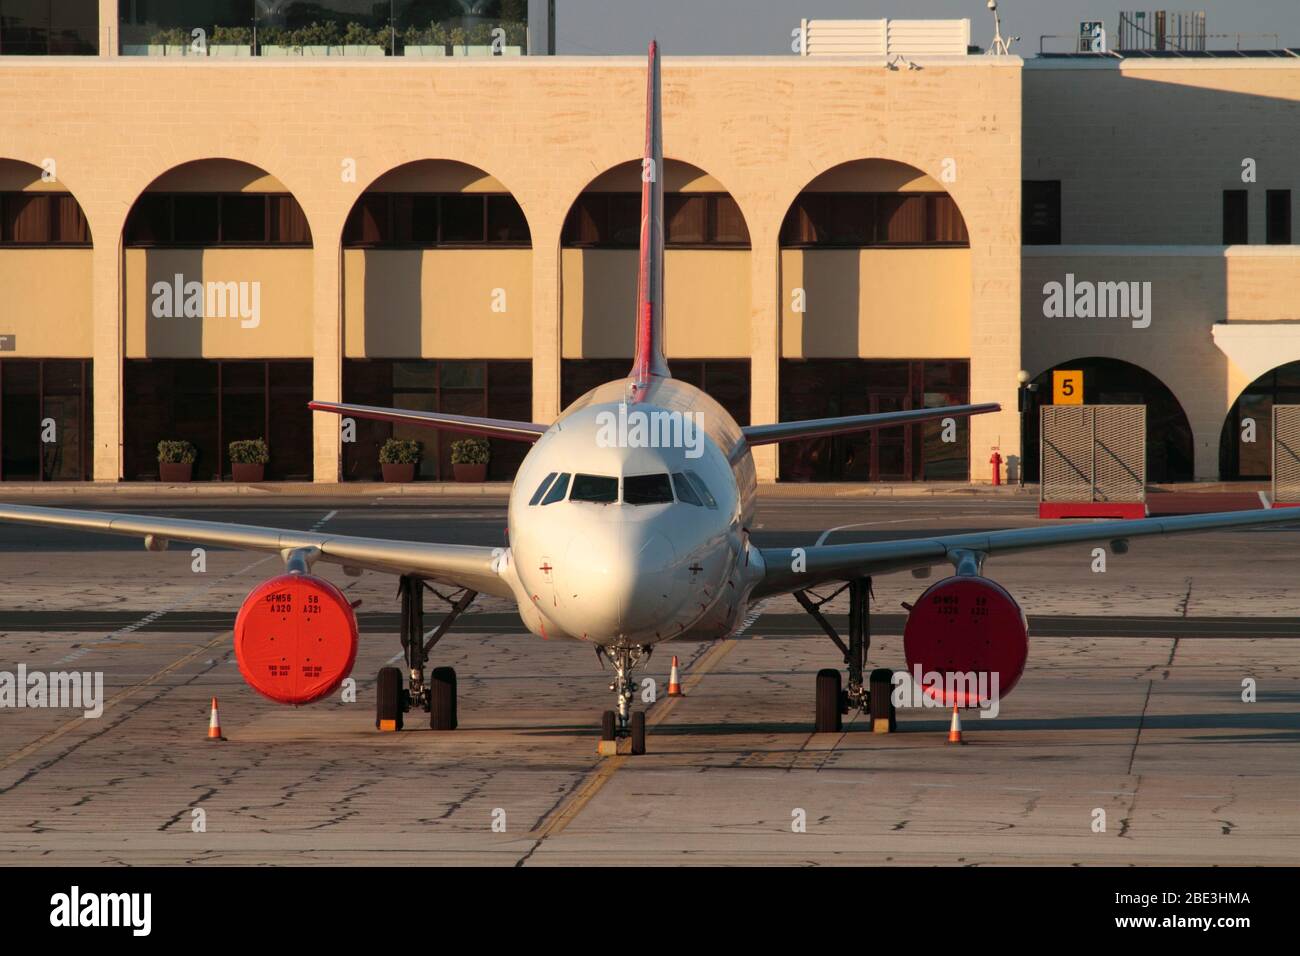 Avión de pasajeros Airbus A320 con conexión a tierra inactivo en el aeropuerto inactivo. No hay detalles de propiedad visibles. Efecto del coronavirus COVID-19 en los viajes aéreos. Foto de stock